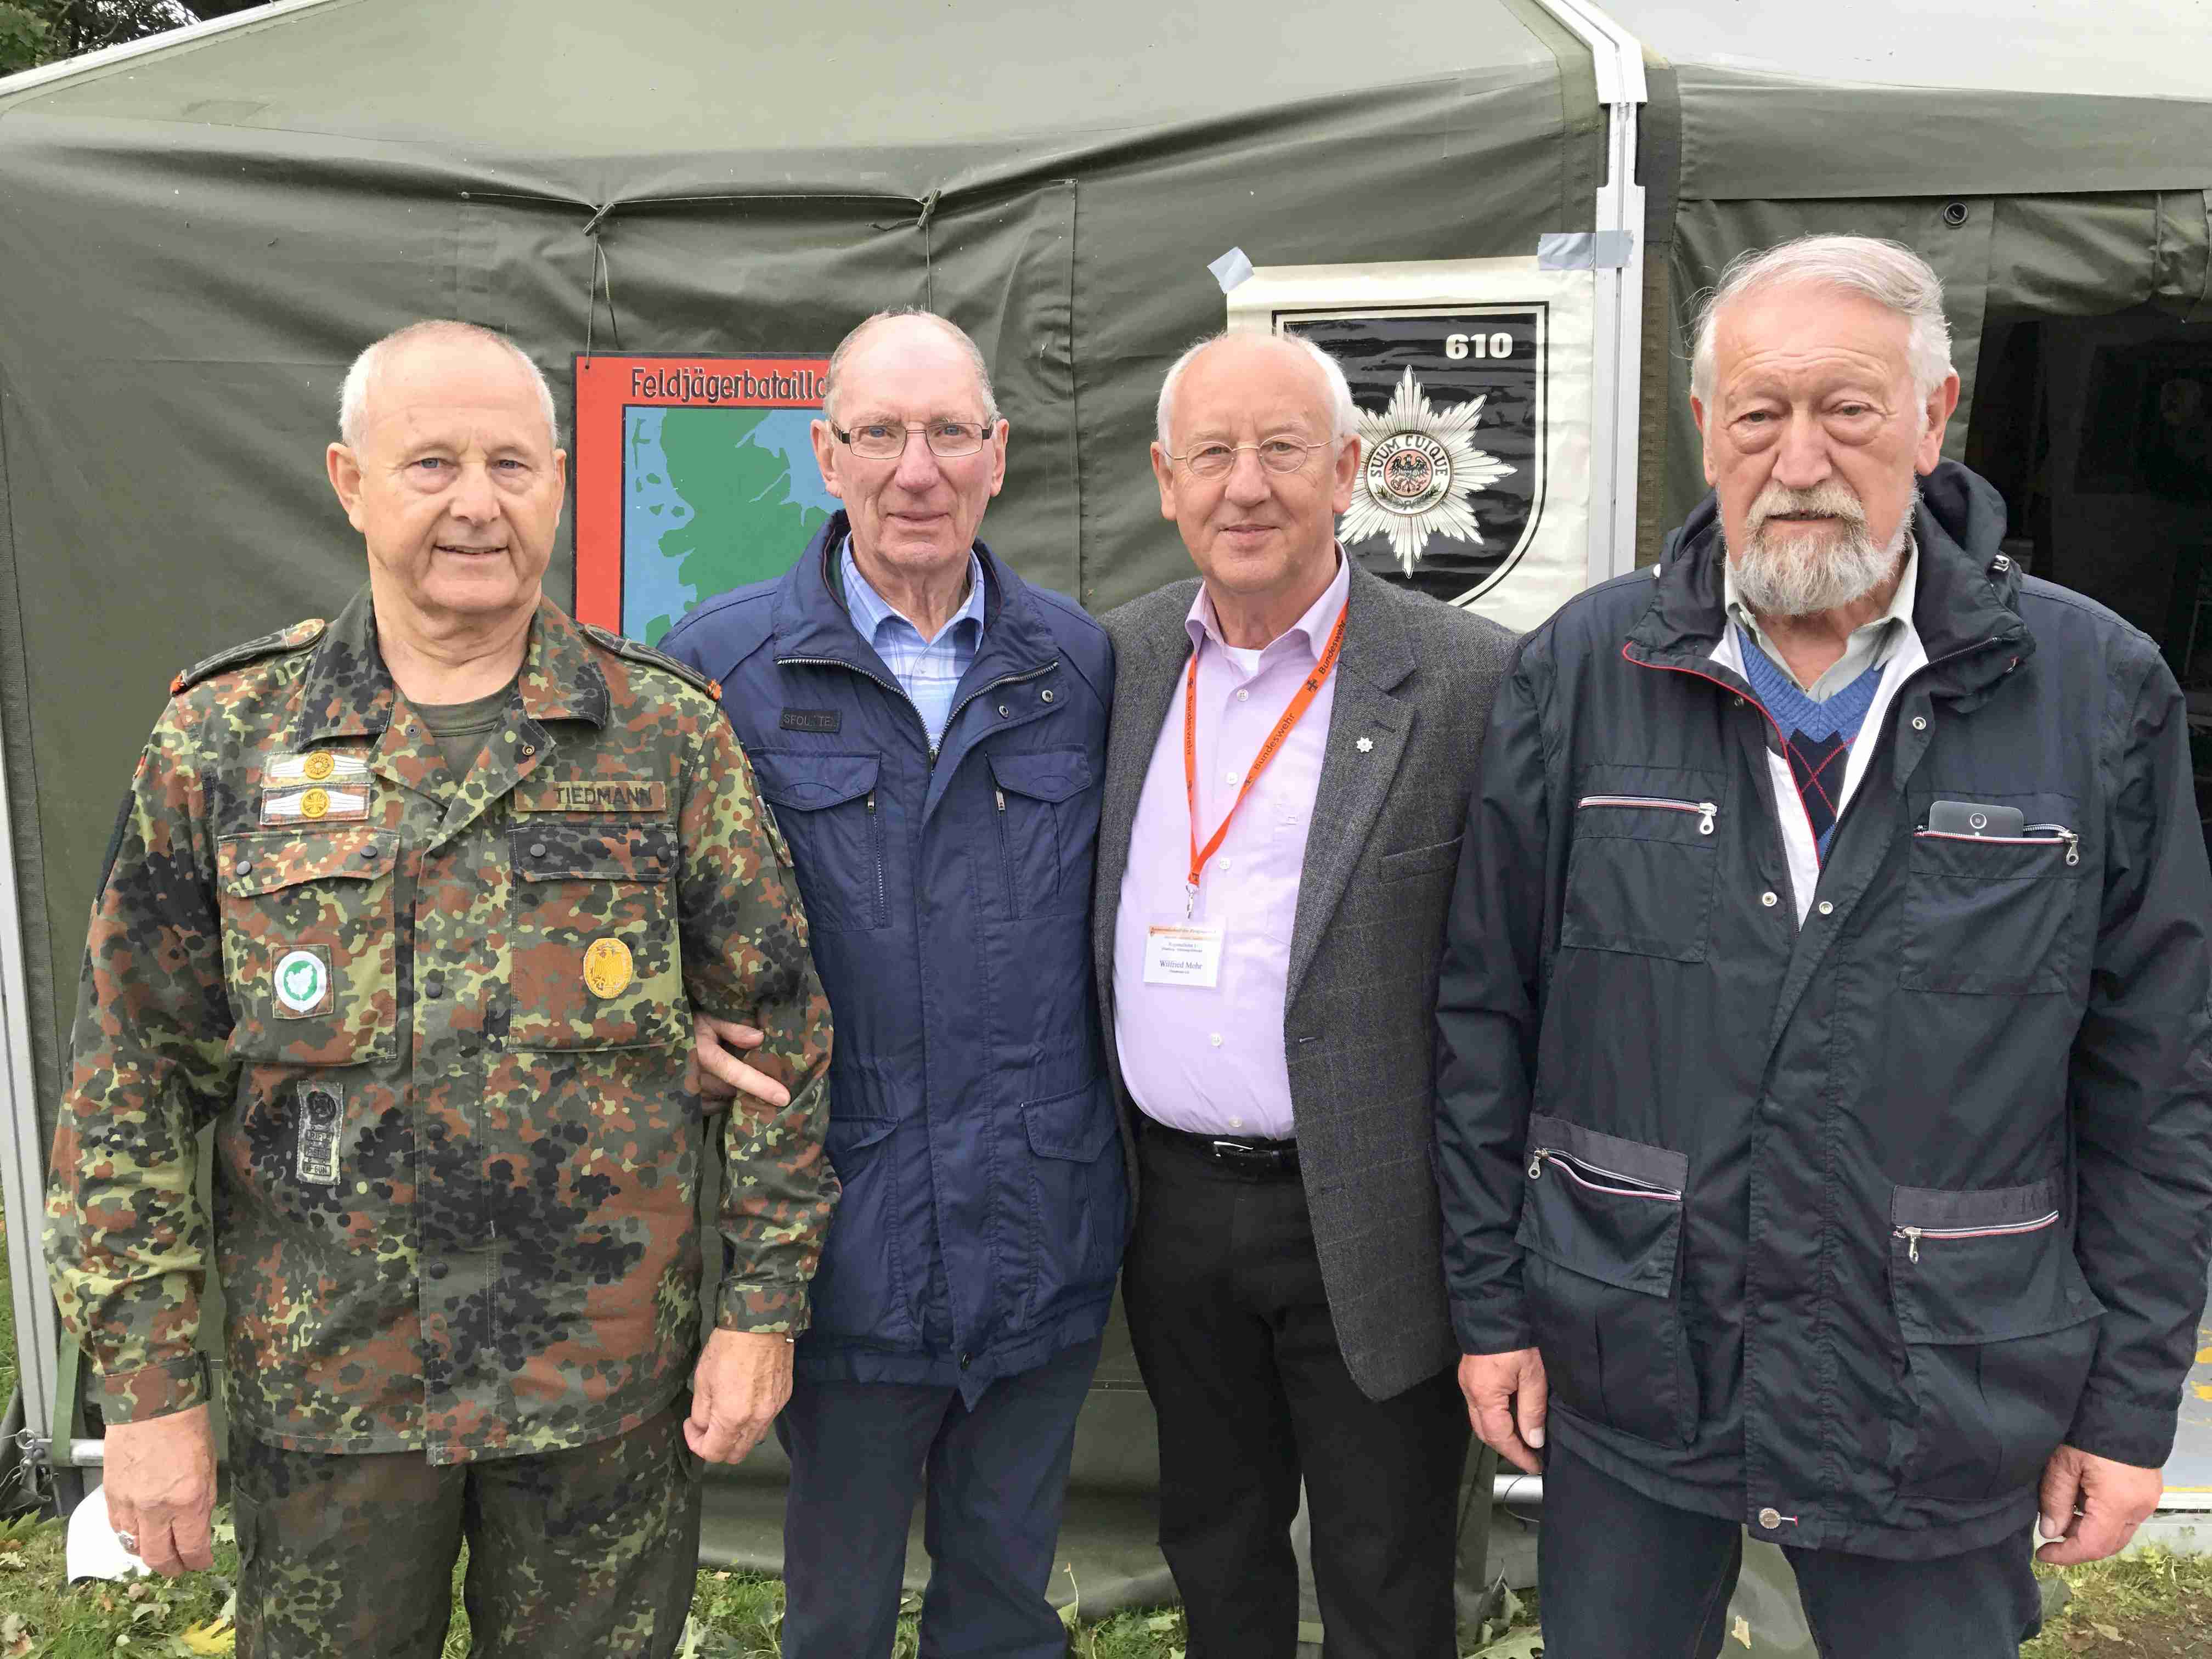 v.l.: Karl-Heinz Tiedmann, Hans-Joachim Krüger, Wilfried Mohr, Dieter Kammholz